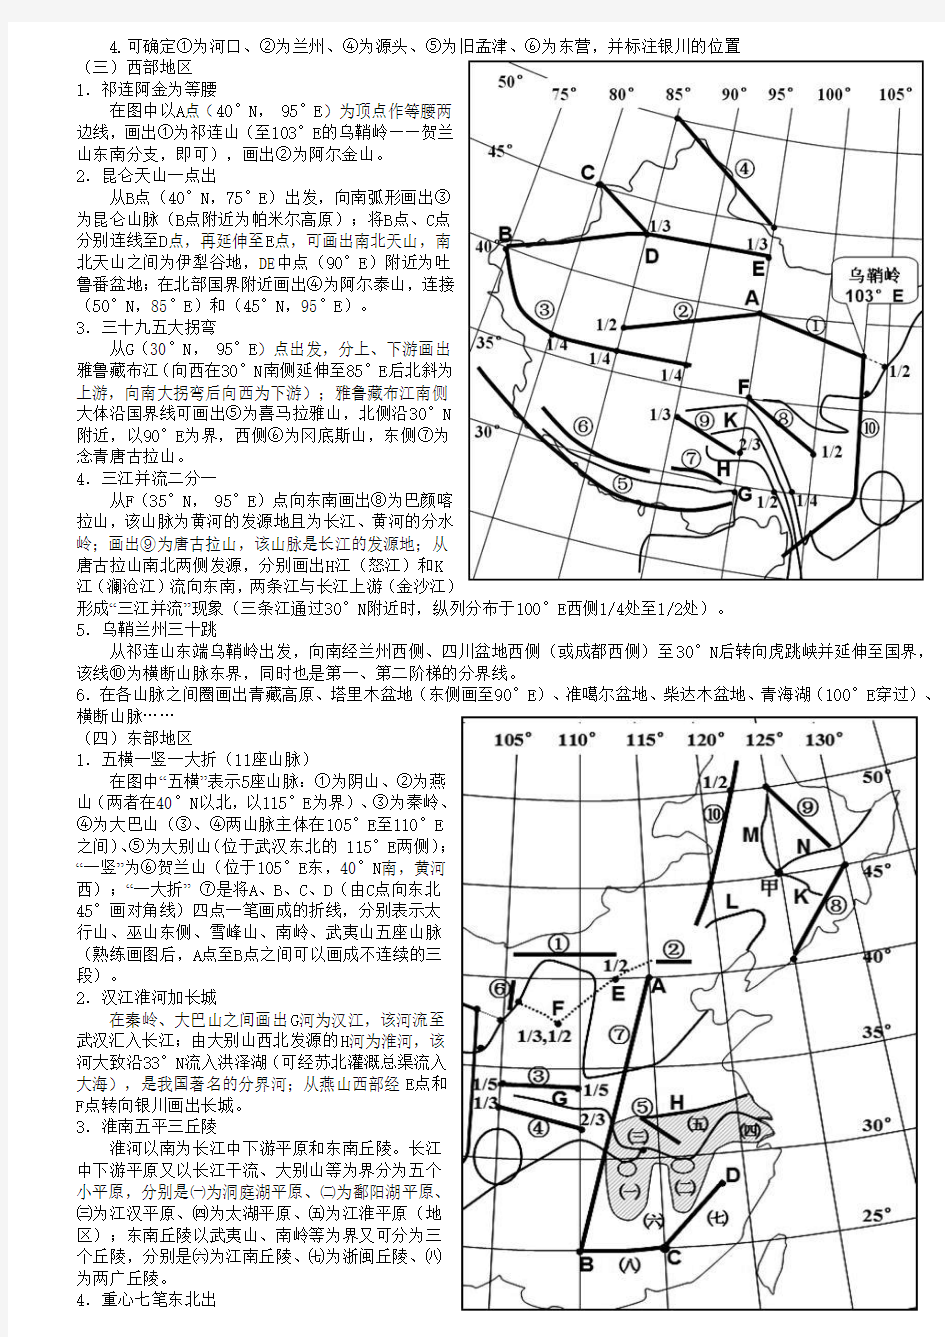 中国地理识图训练(四)——中国经纬度定位(学生版)